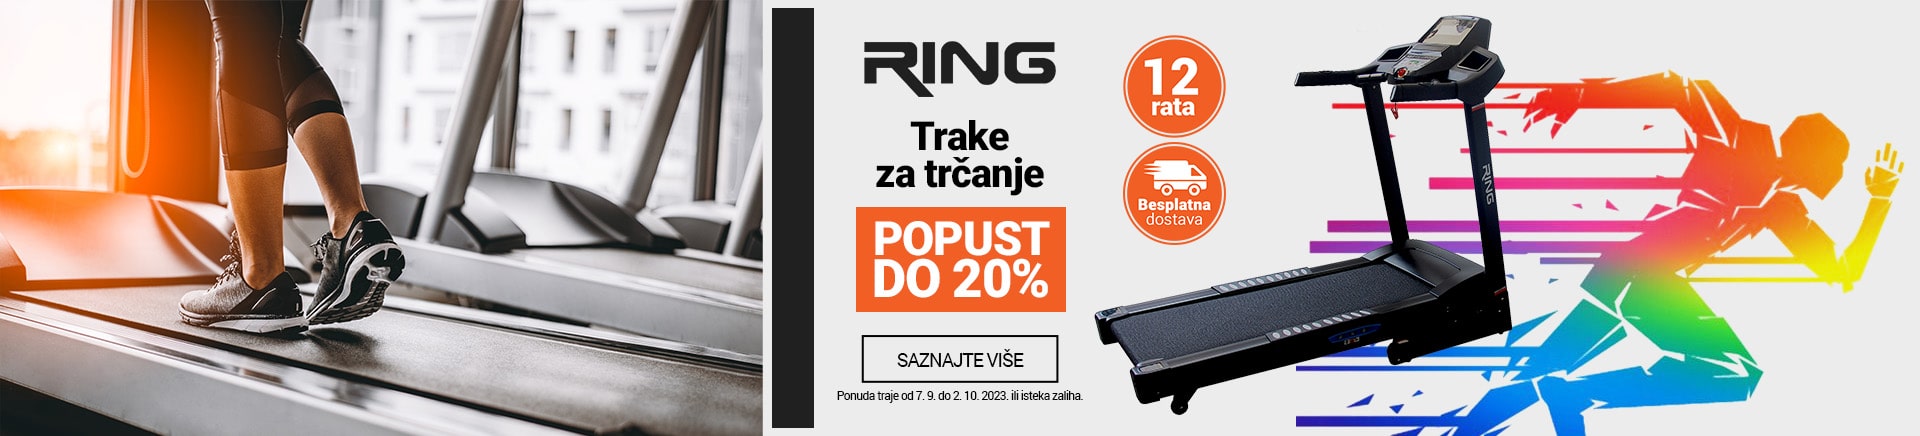 RS~Ring Trake za trcanje 20 posto MOBILE 380 X 436-min.jpg